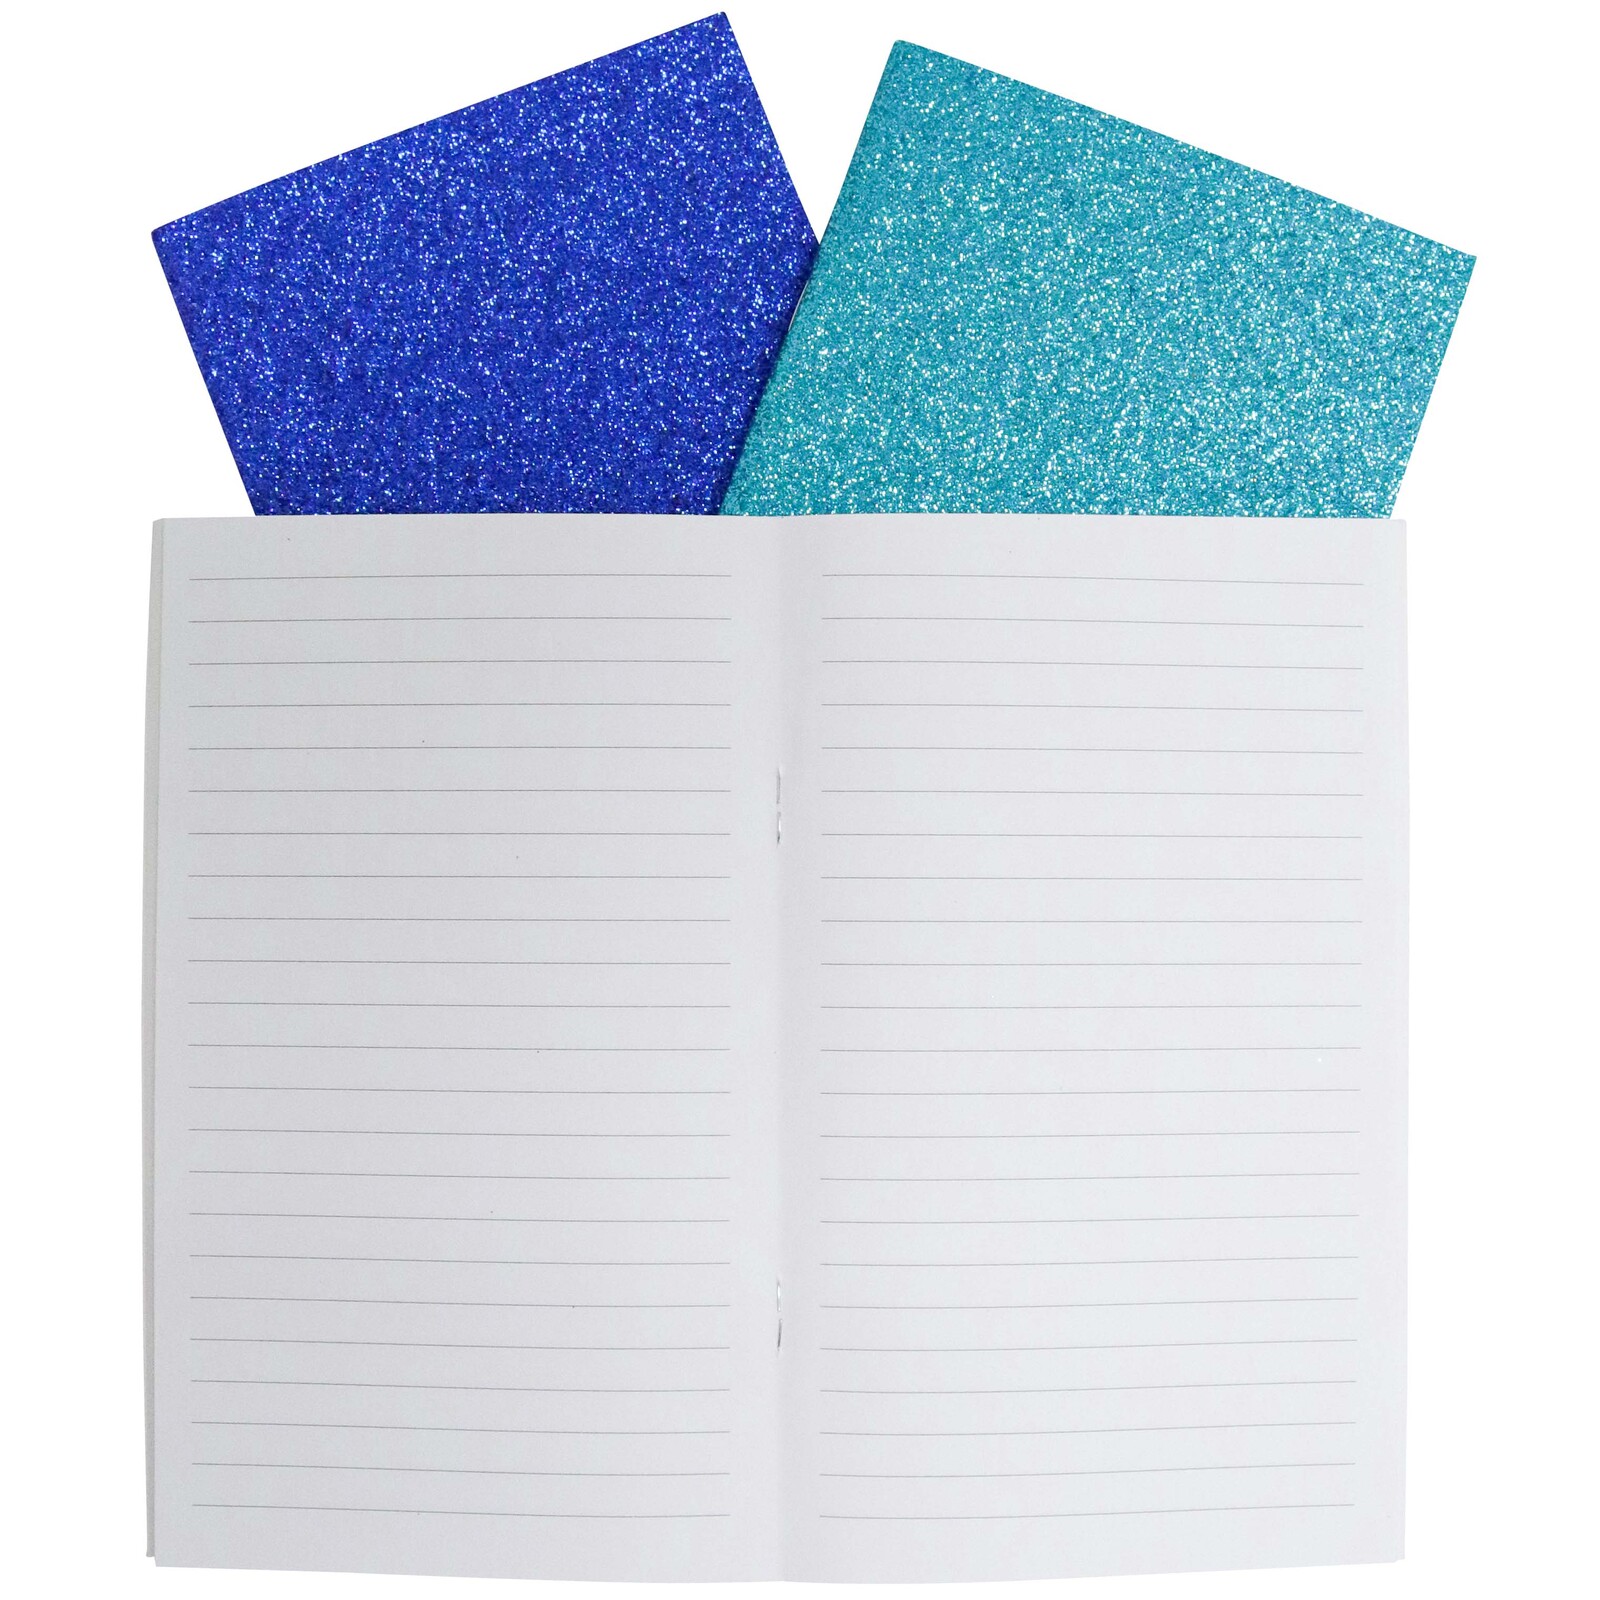 Notebooks S/3 Glitter Ocean